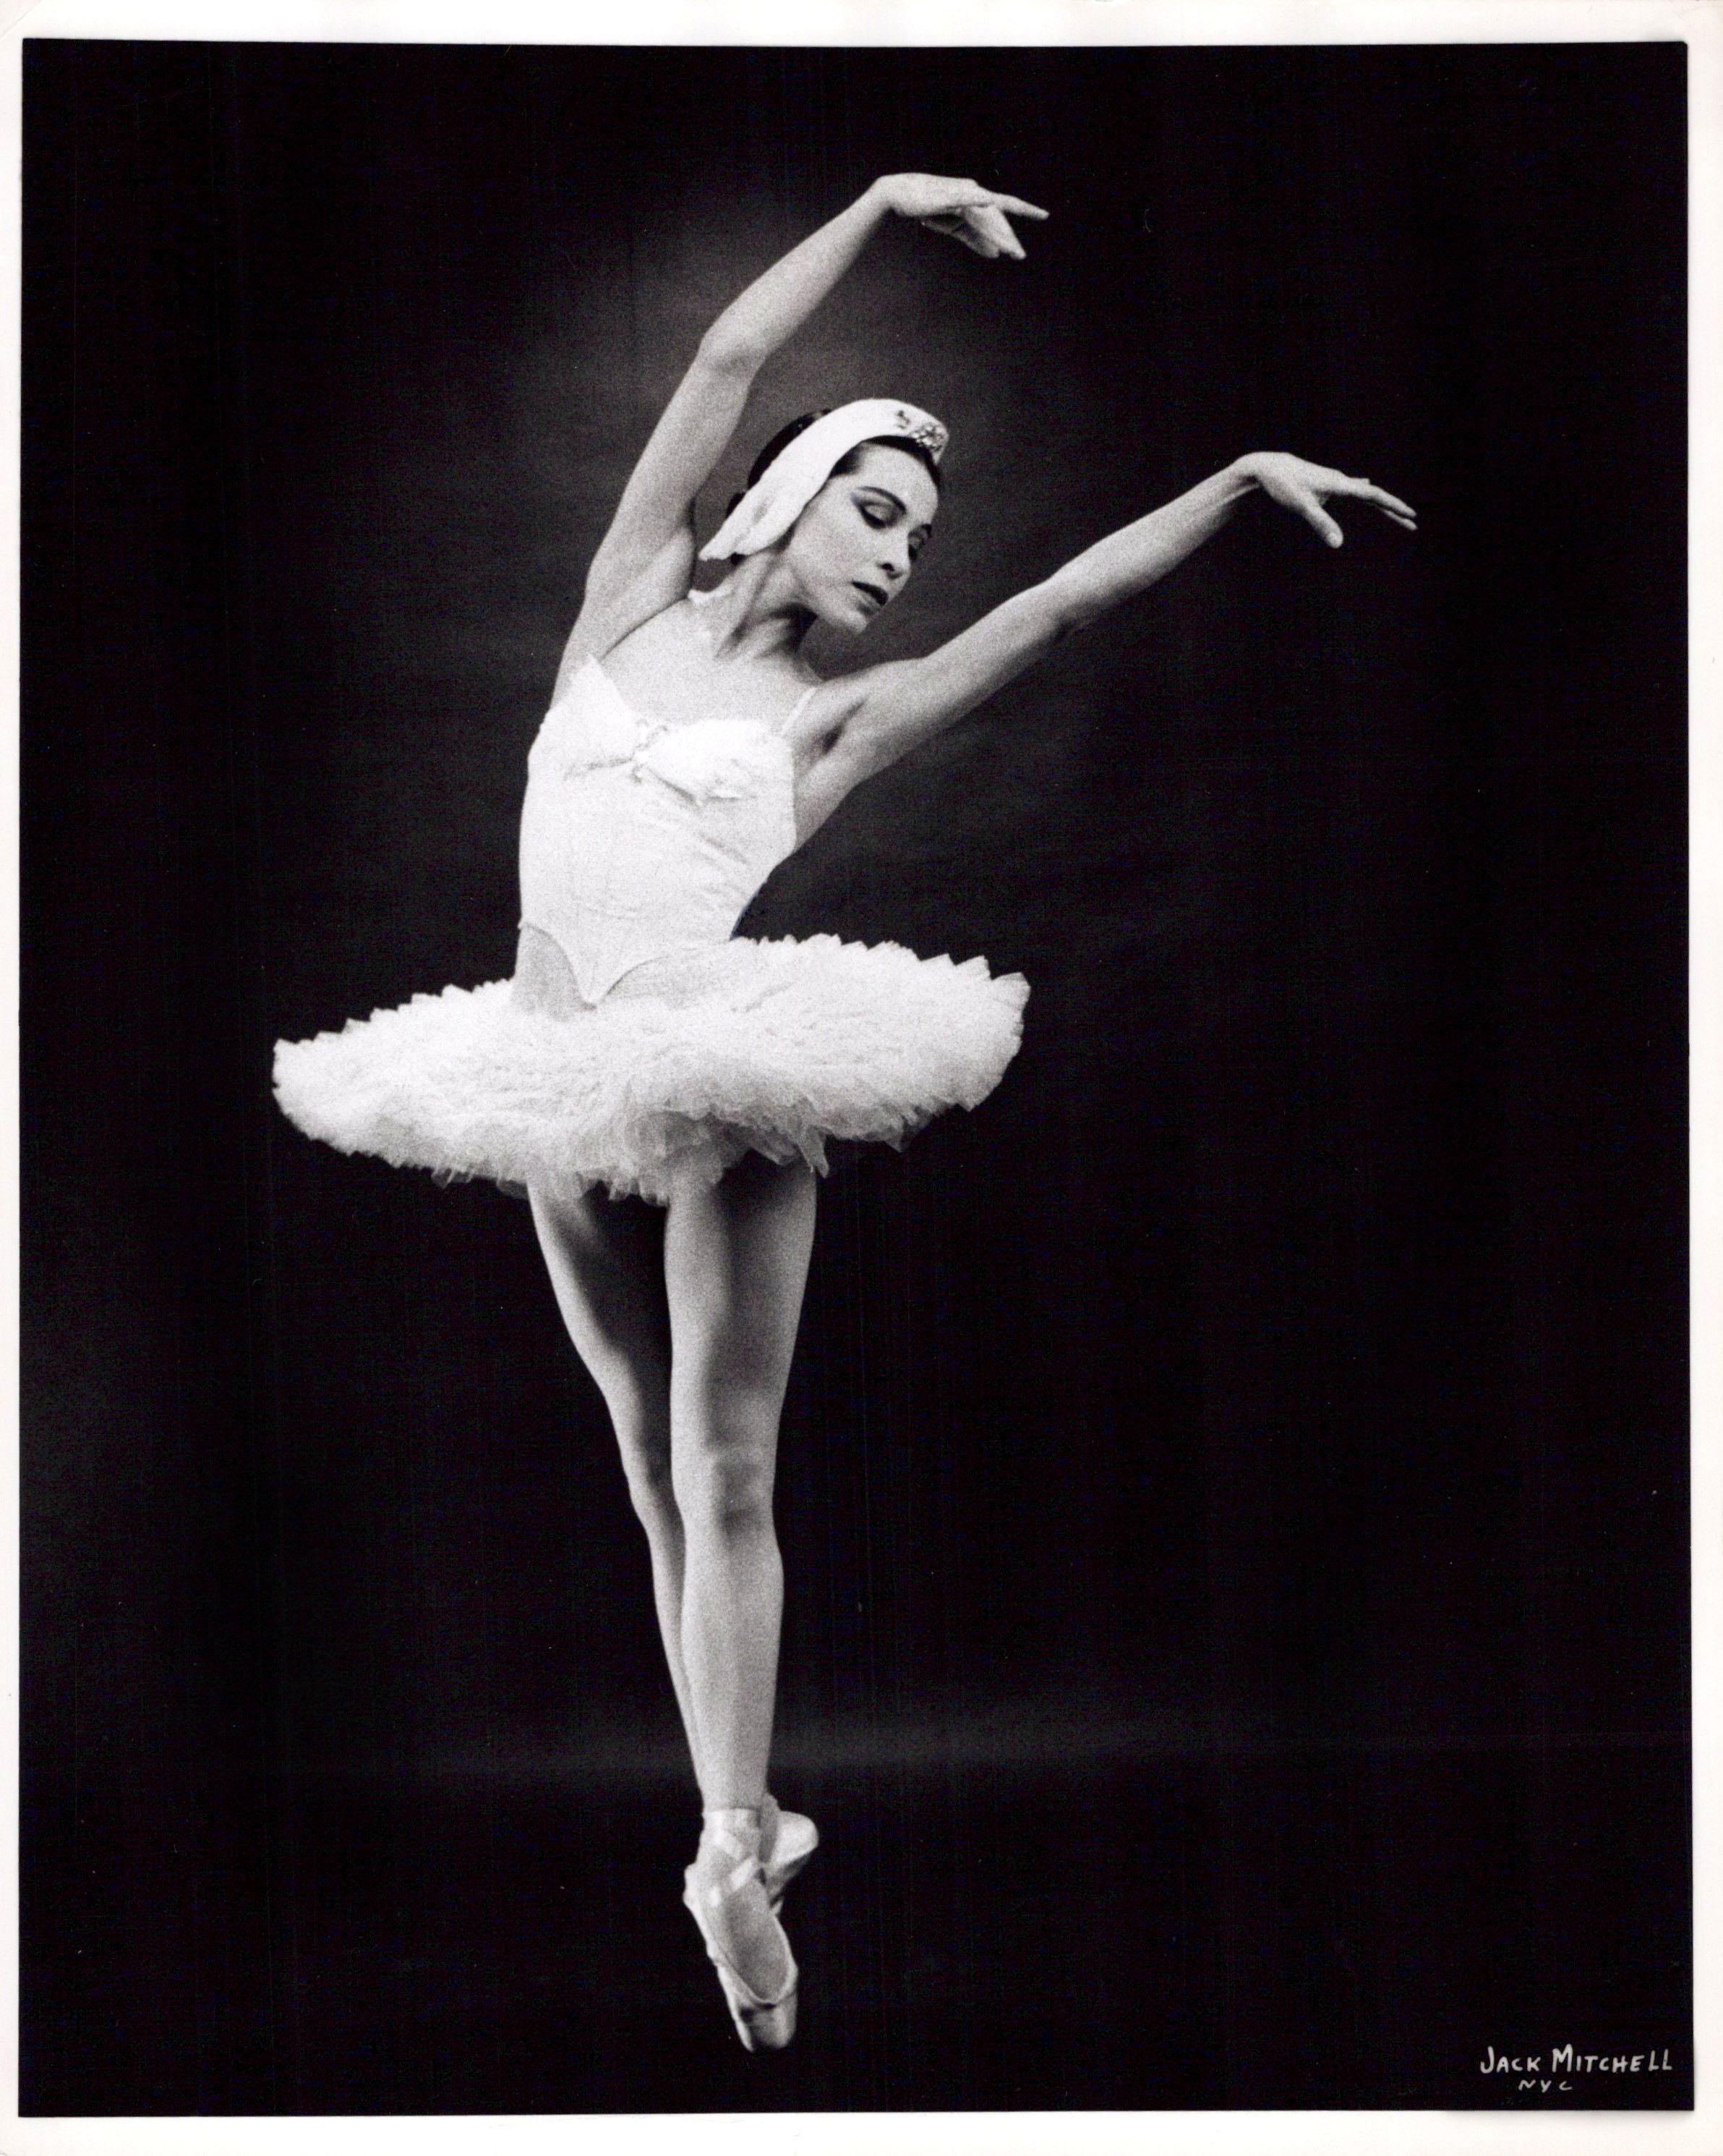 Black and White Photograph Jack Mitchell - La célèbre ballerine amérindienne Maria Tallchief dansant « Swan Lake » (le lac de Swan)